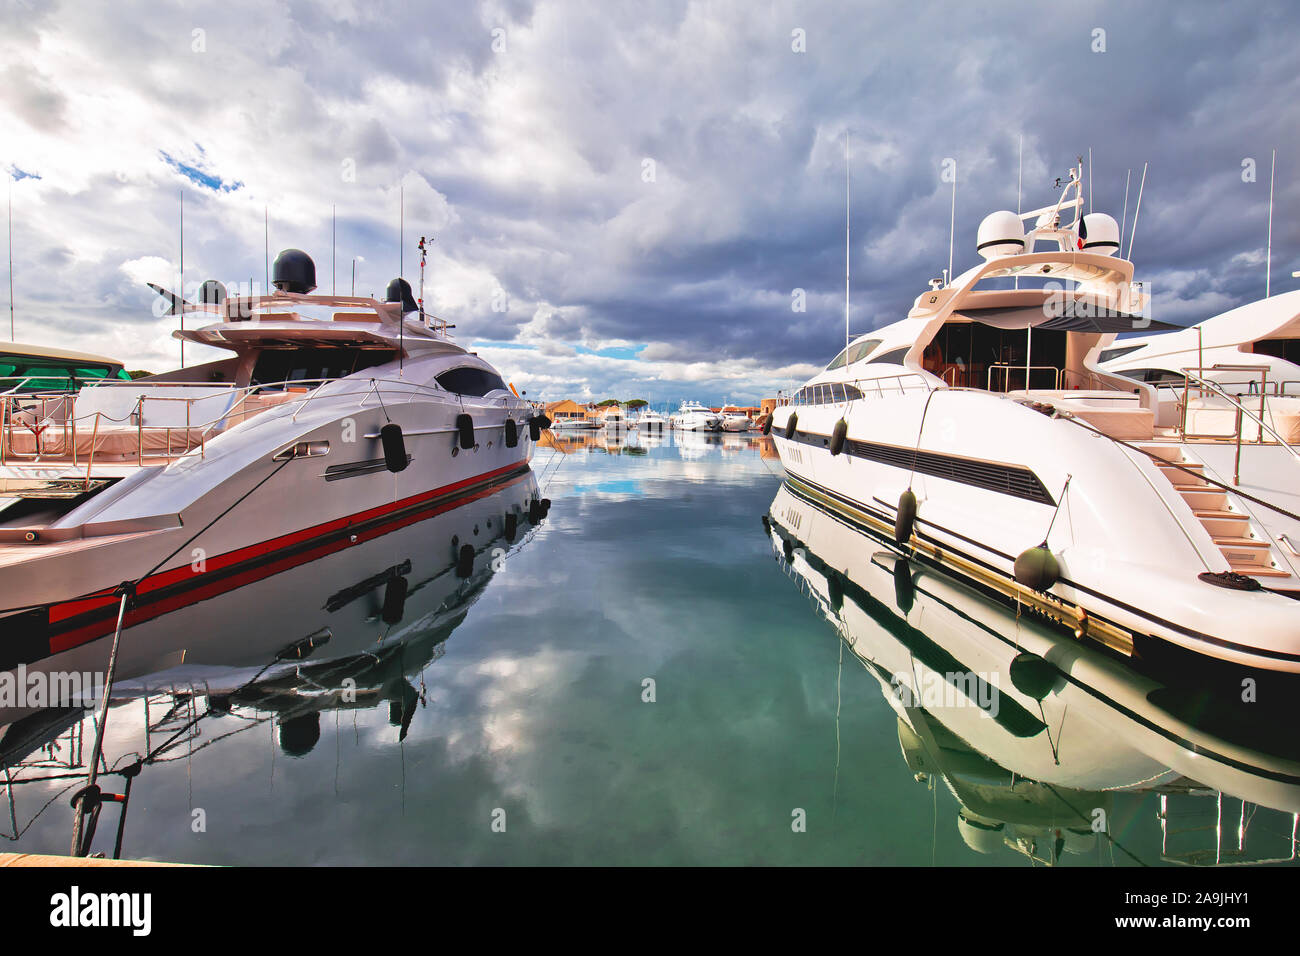 Saint Tropez. Luxus yachting Hafen von Saint Tropez an der Cote d'Azur, Alpes-Maritimes Abteilung im Süden Frankreichs Stockfoto